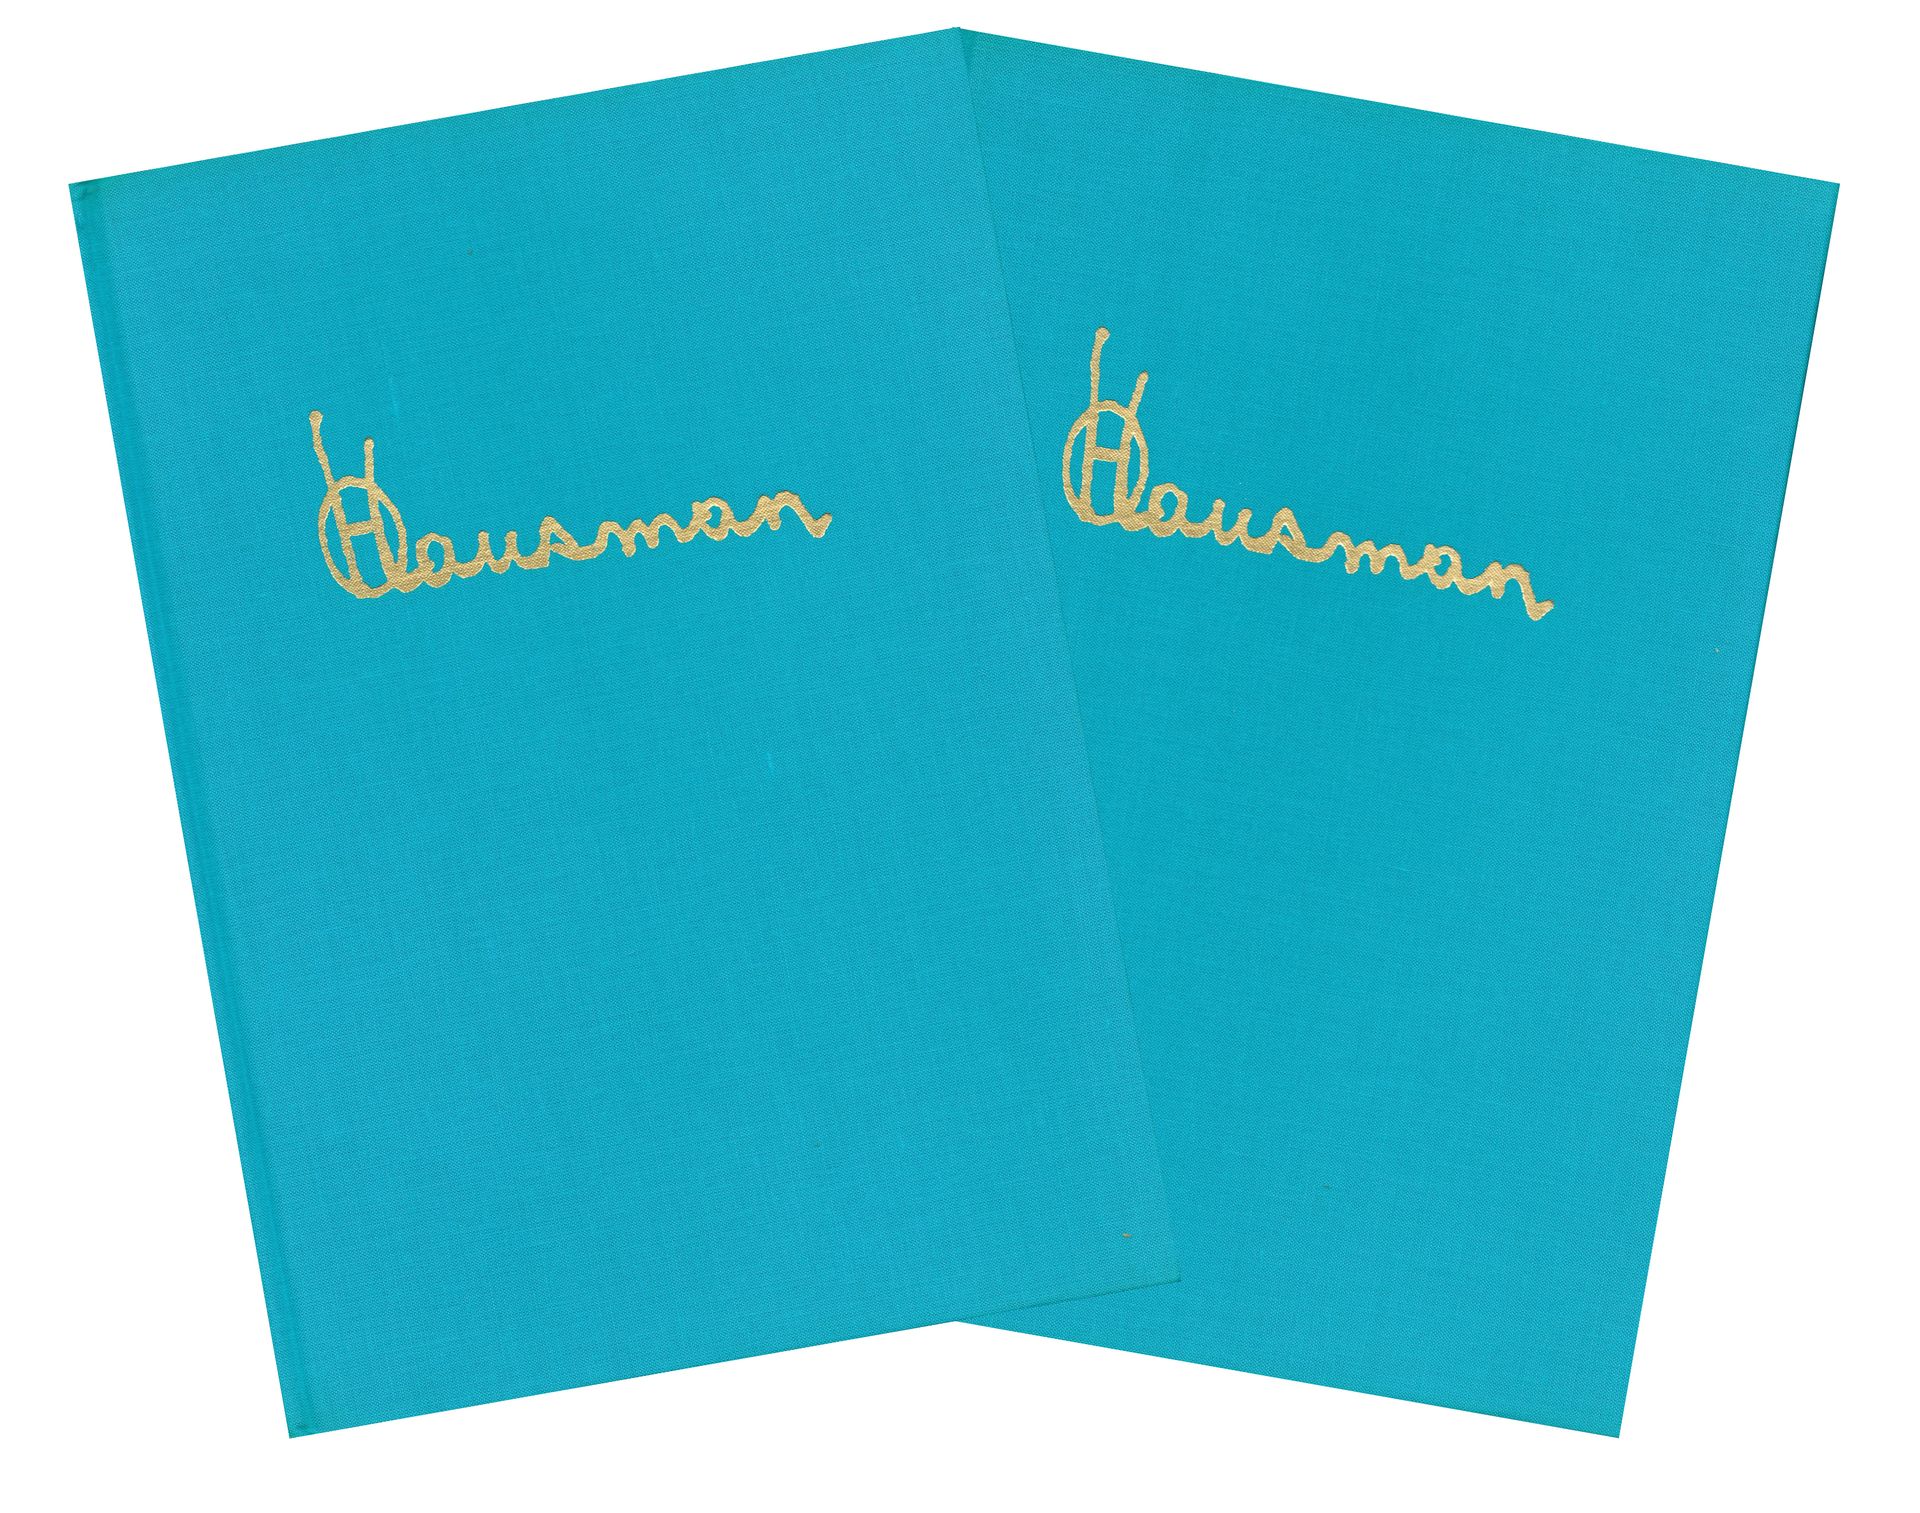 HAUSMAN Zunie. Bände 1 und 2. Erste Auflage 100 Exemplare, N°/S von Hausman. Ban&hellip;